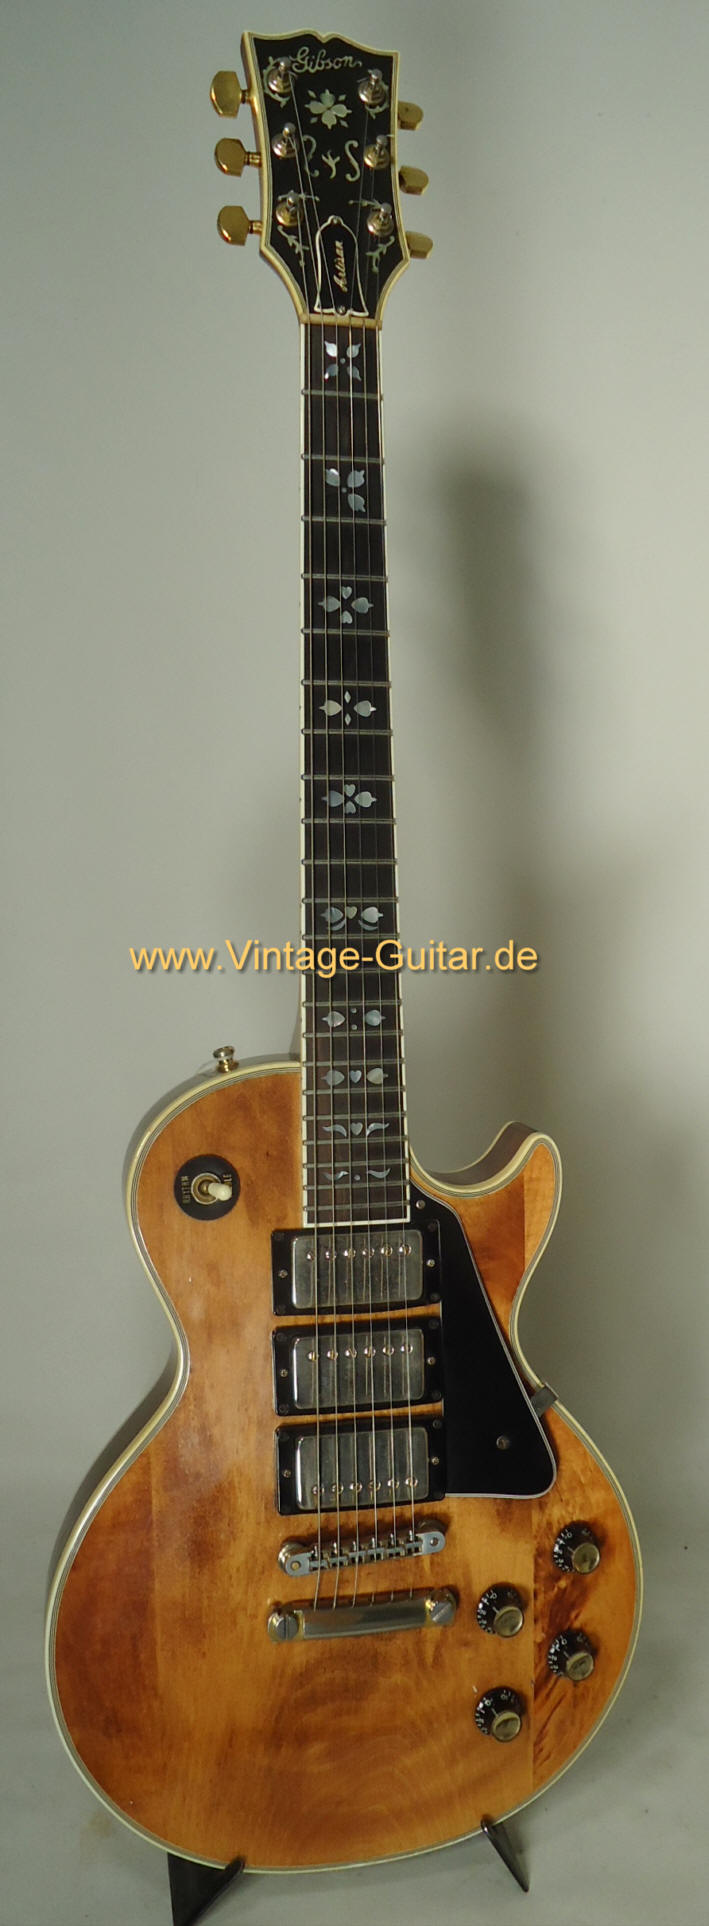 Gibson Les Paul Artisan 1974 a.jpg